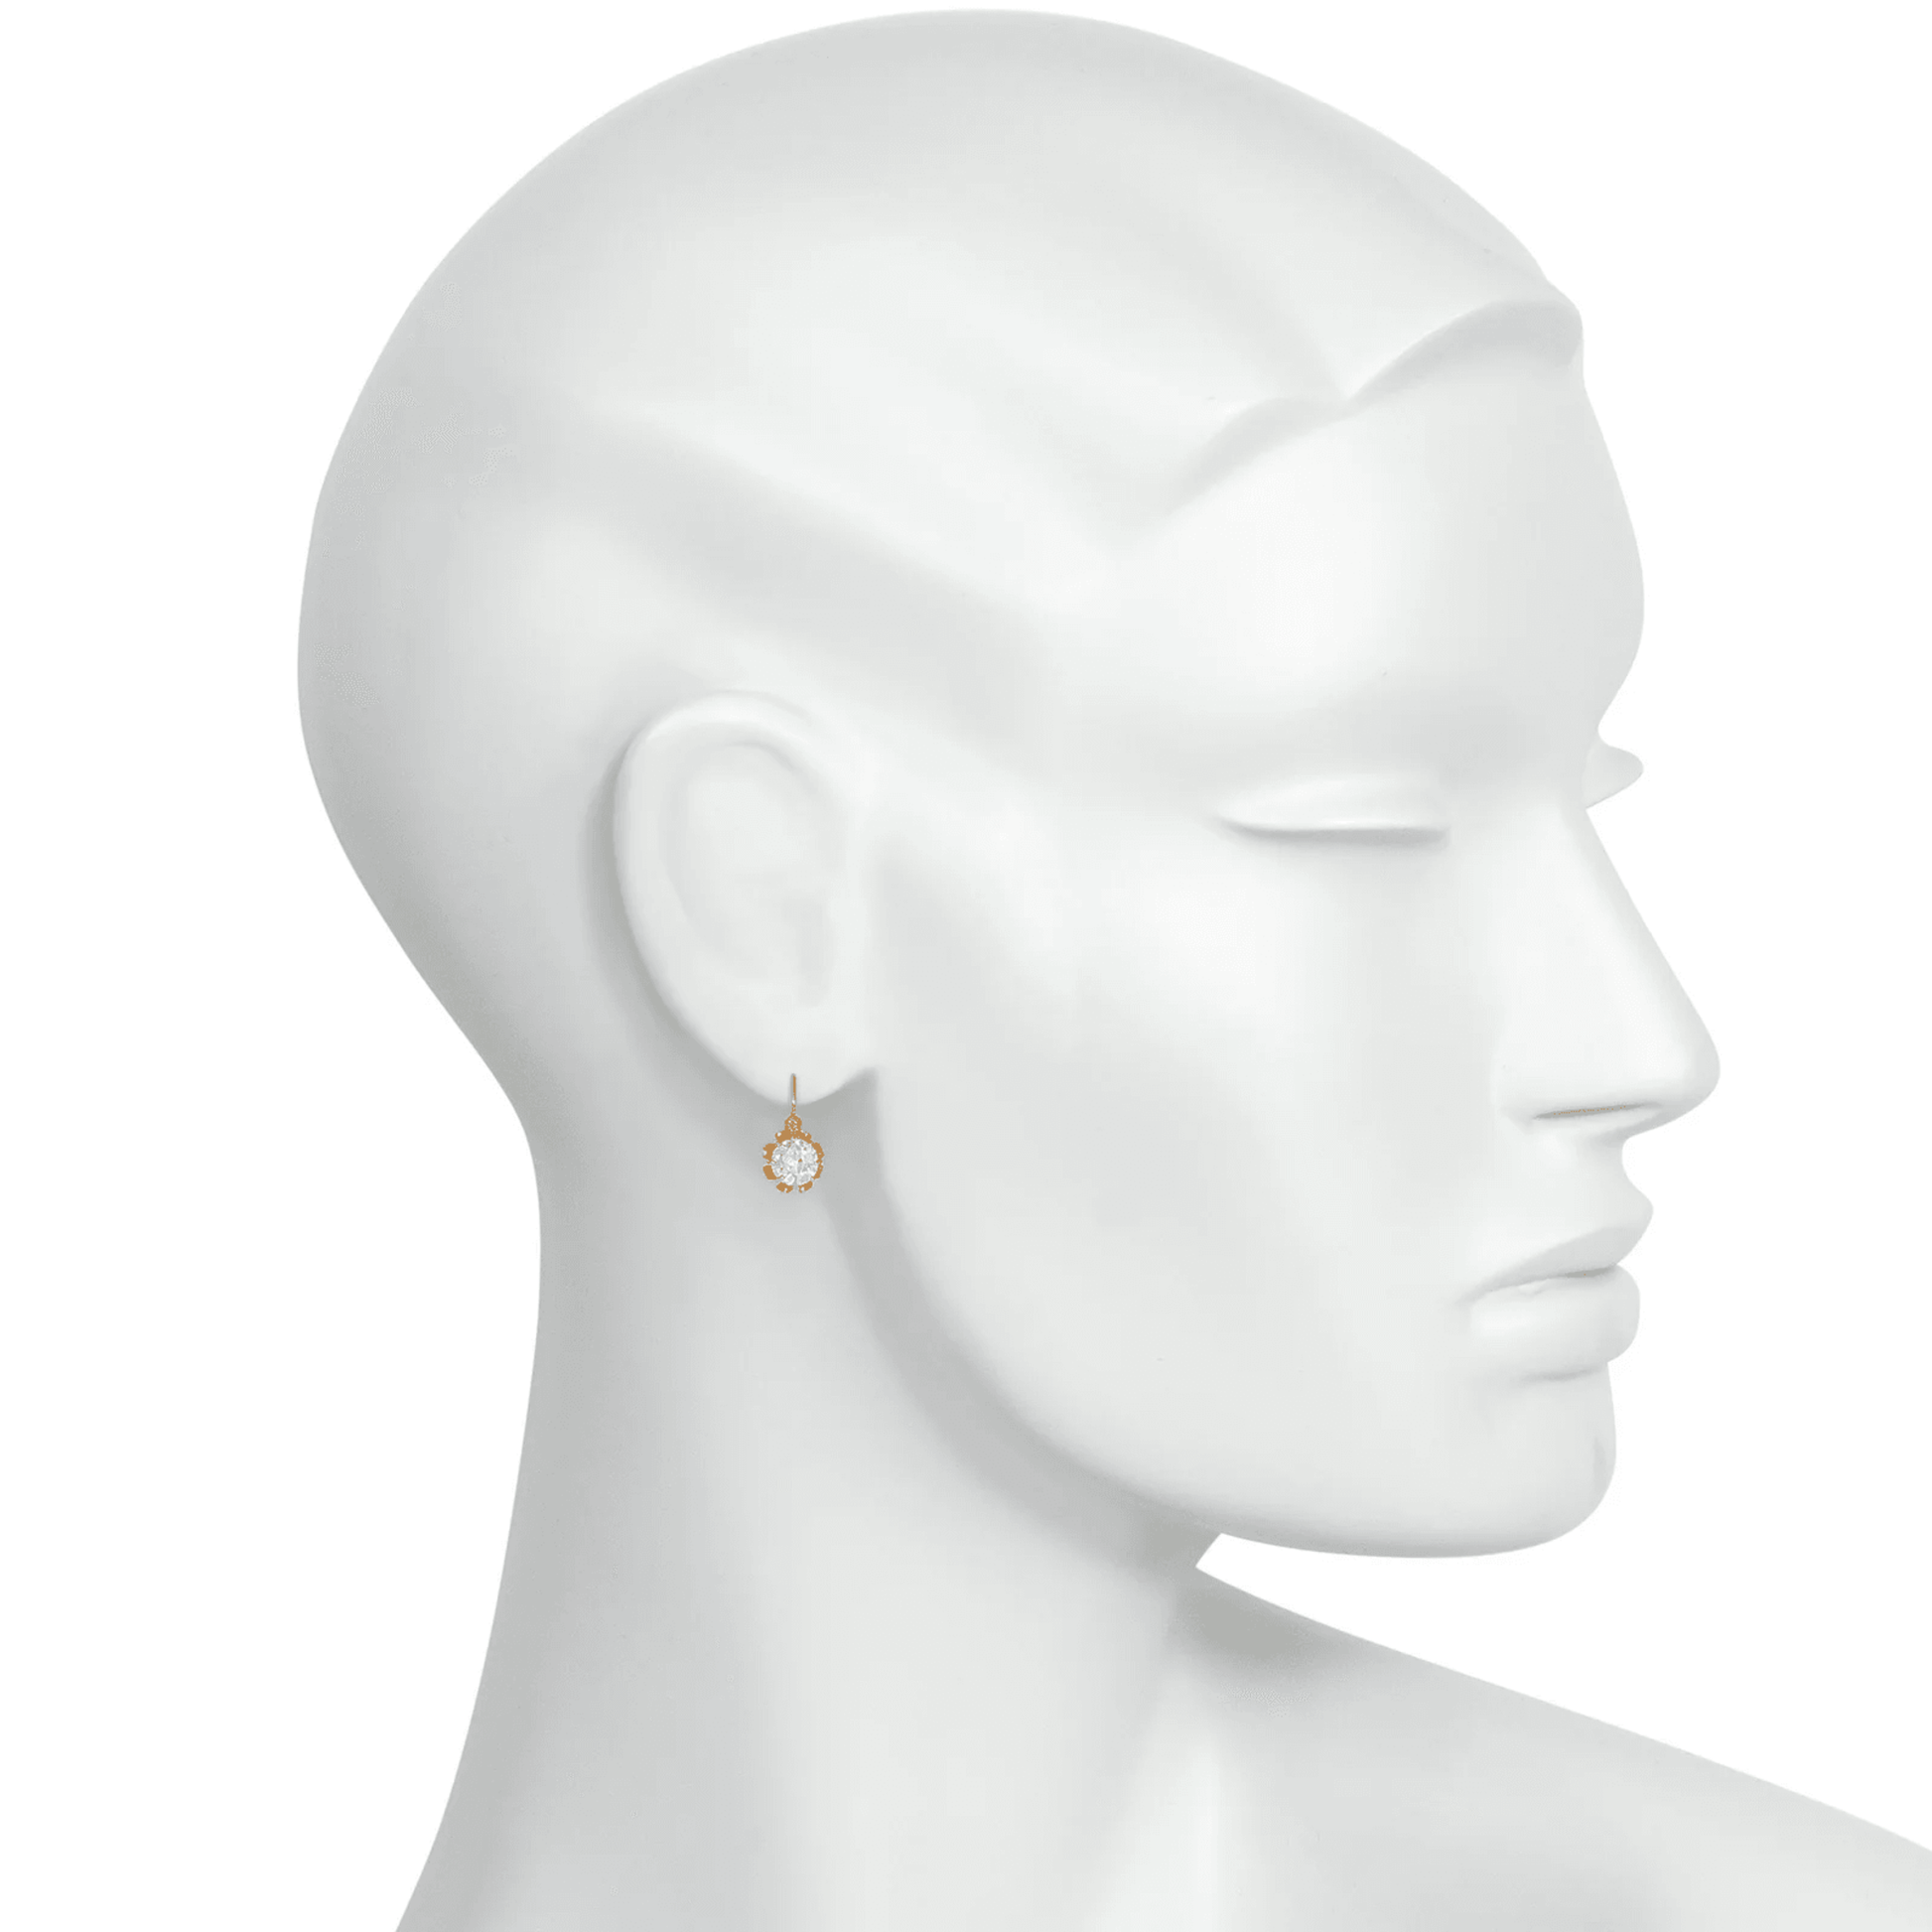 Amédée Petré French Victorian 18KT Yellow Gold Diamond Dormeuse Earrings on ear